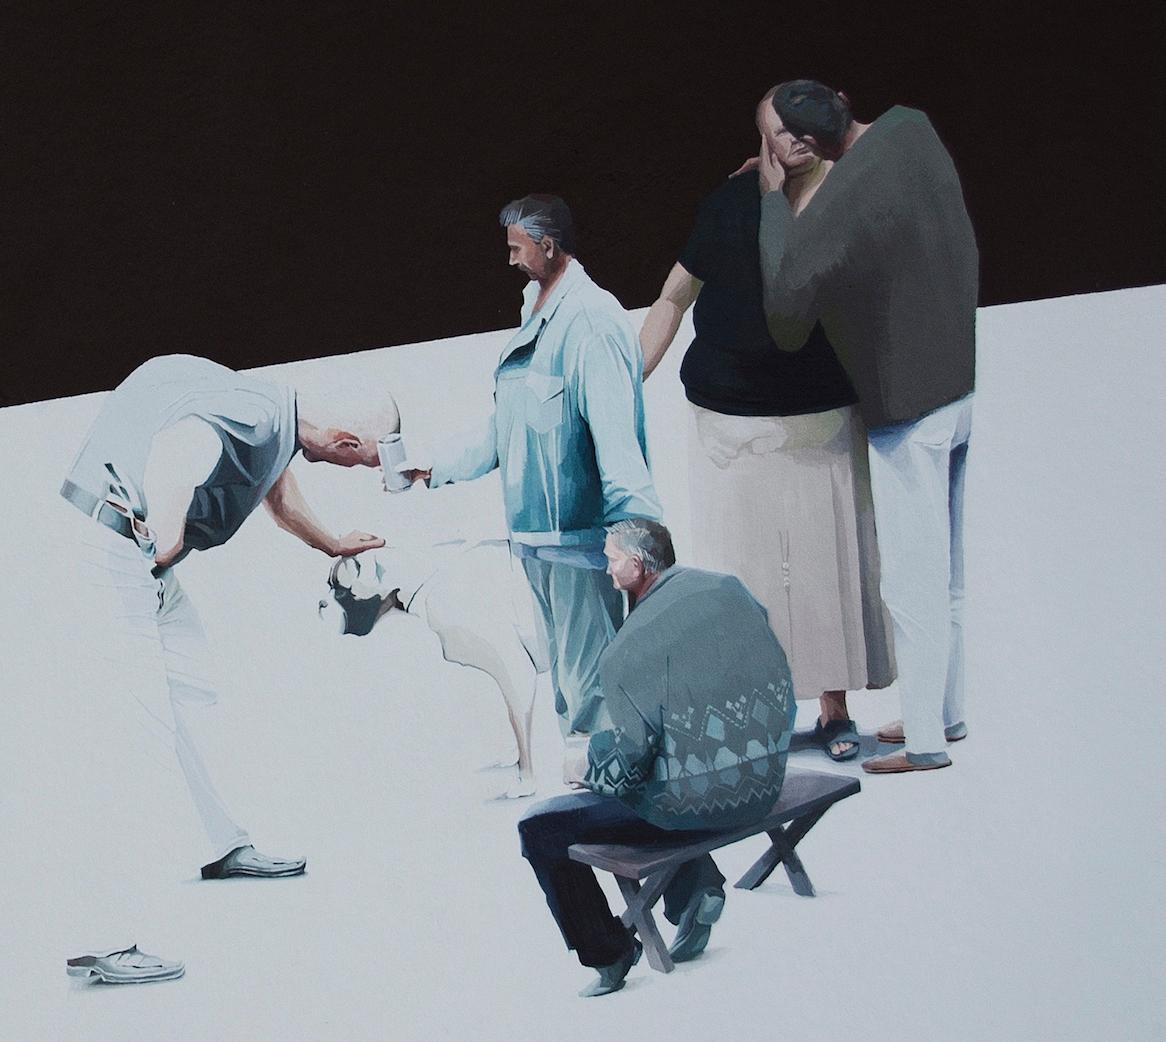 Ohne Titel  5 - Serie Final Fantasy, Modernes figuratives Gemälde mit Hunden (Zeitgenössisch), Painting, von Magdalena Peszkowska